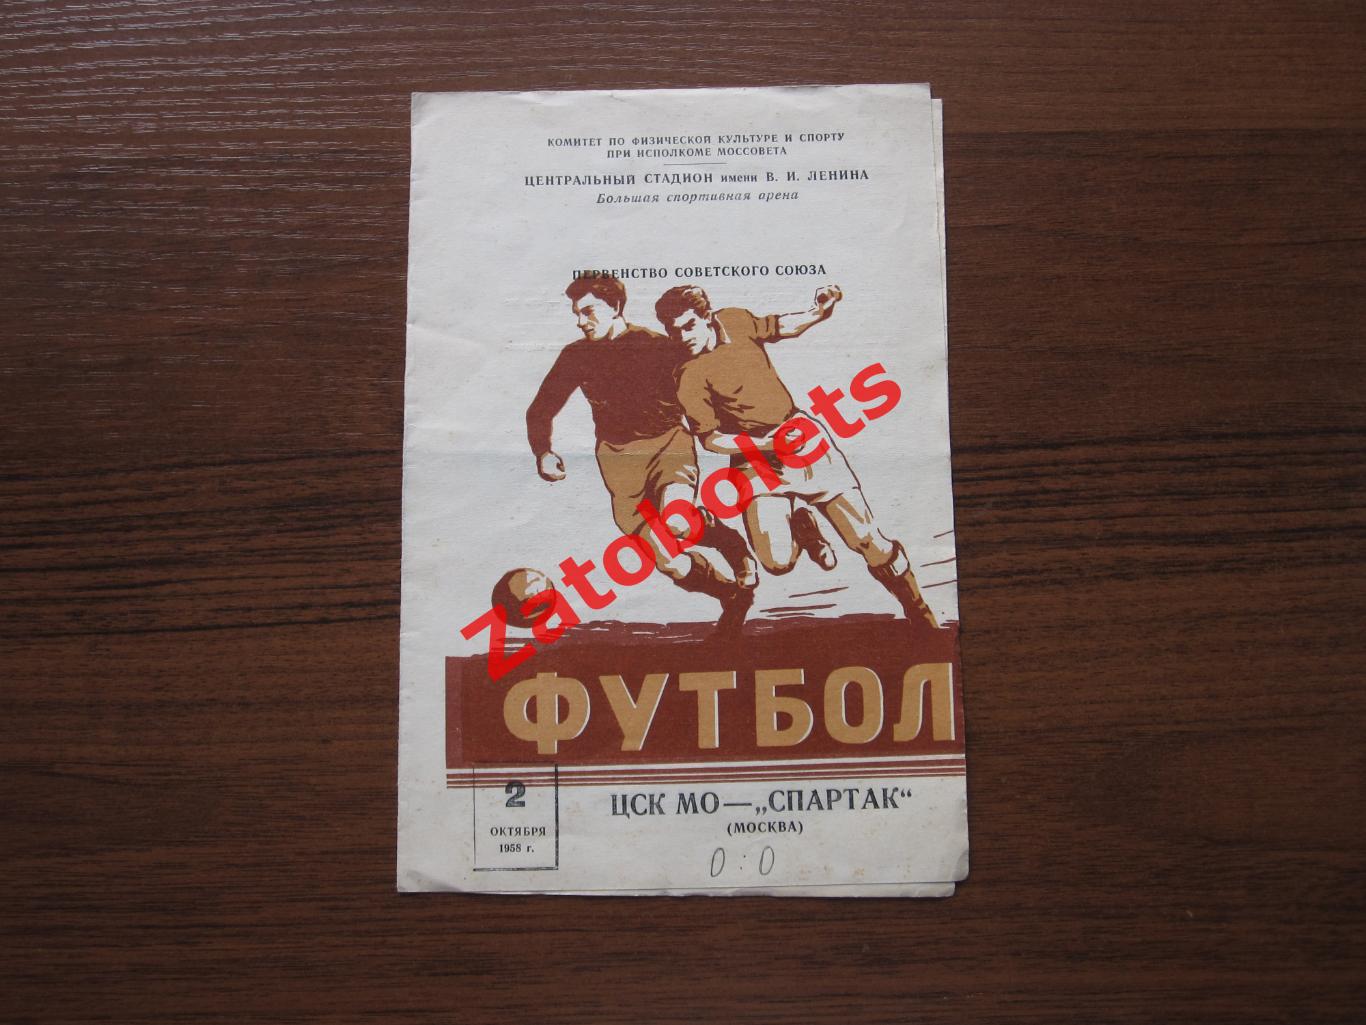 ЦСКА / ЦСК МО - Спартак Москва 1958